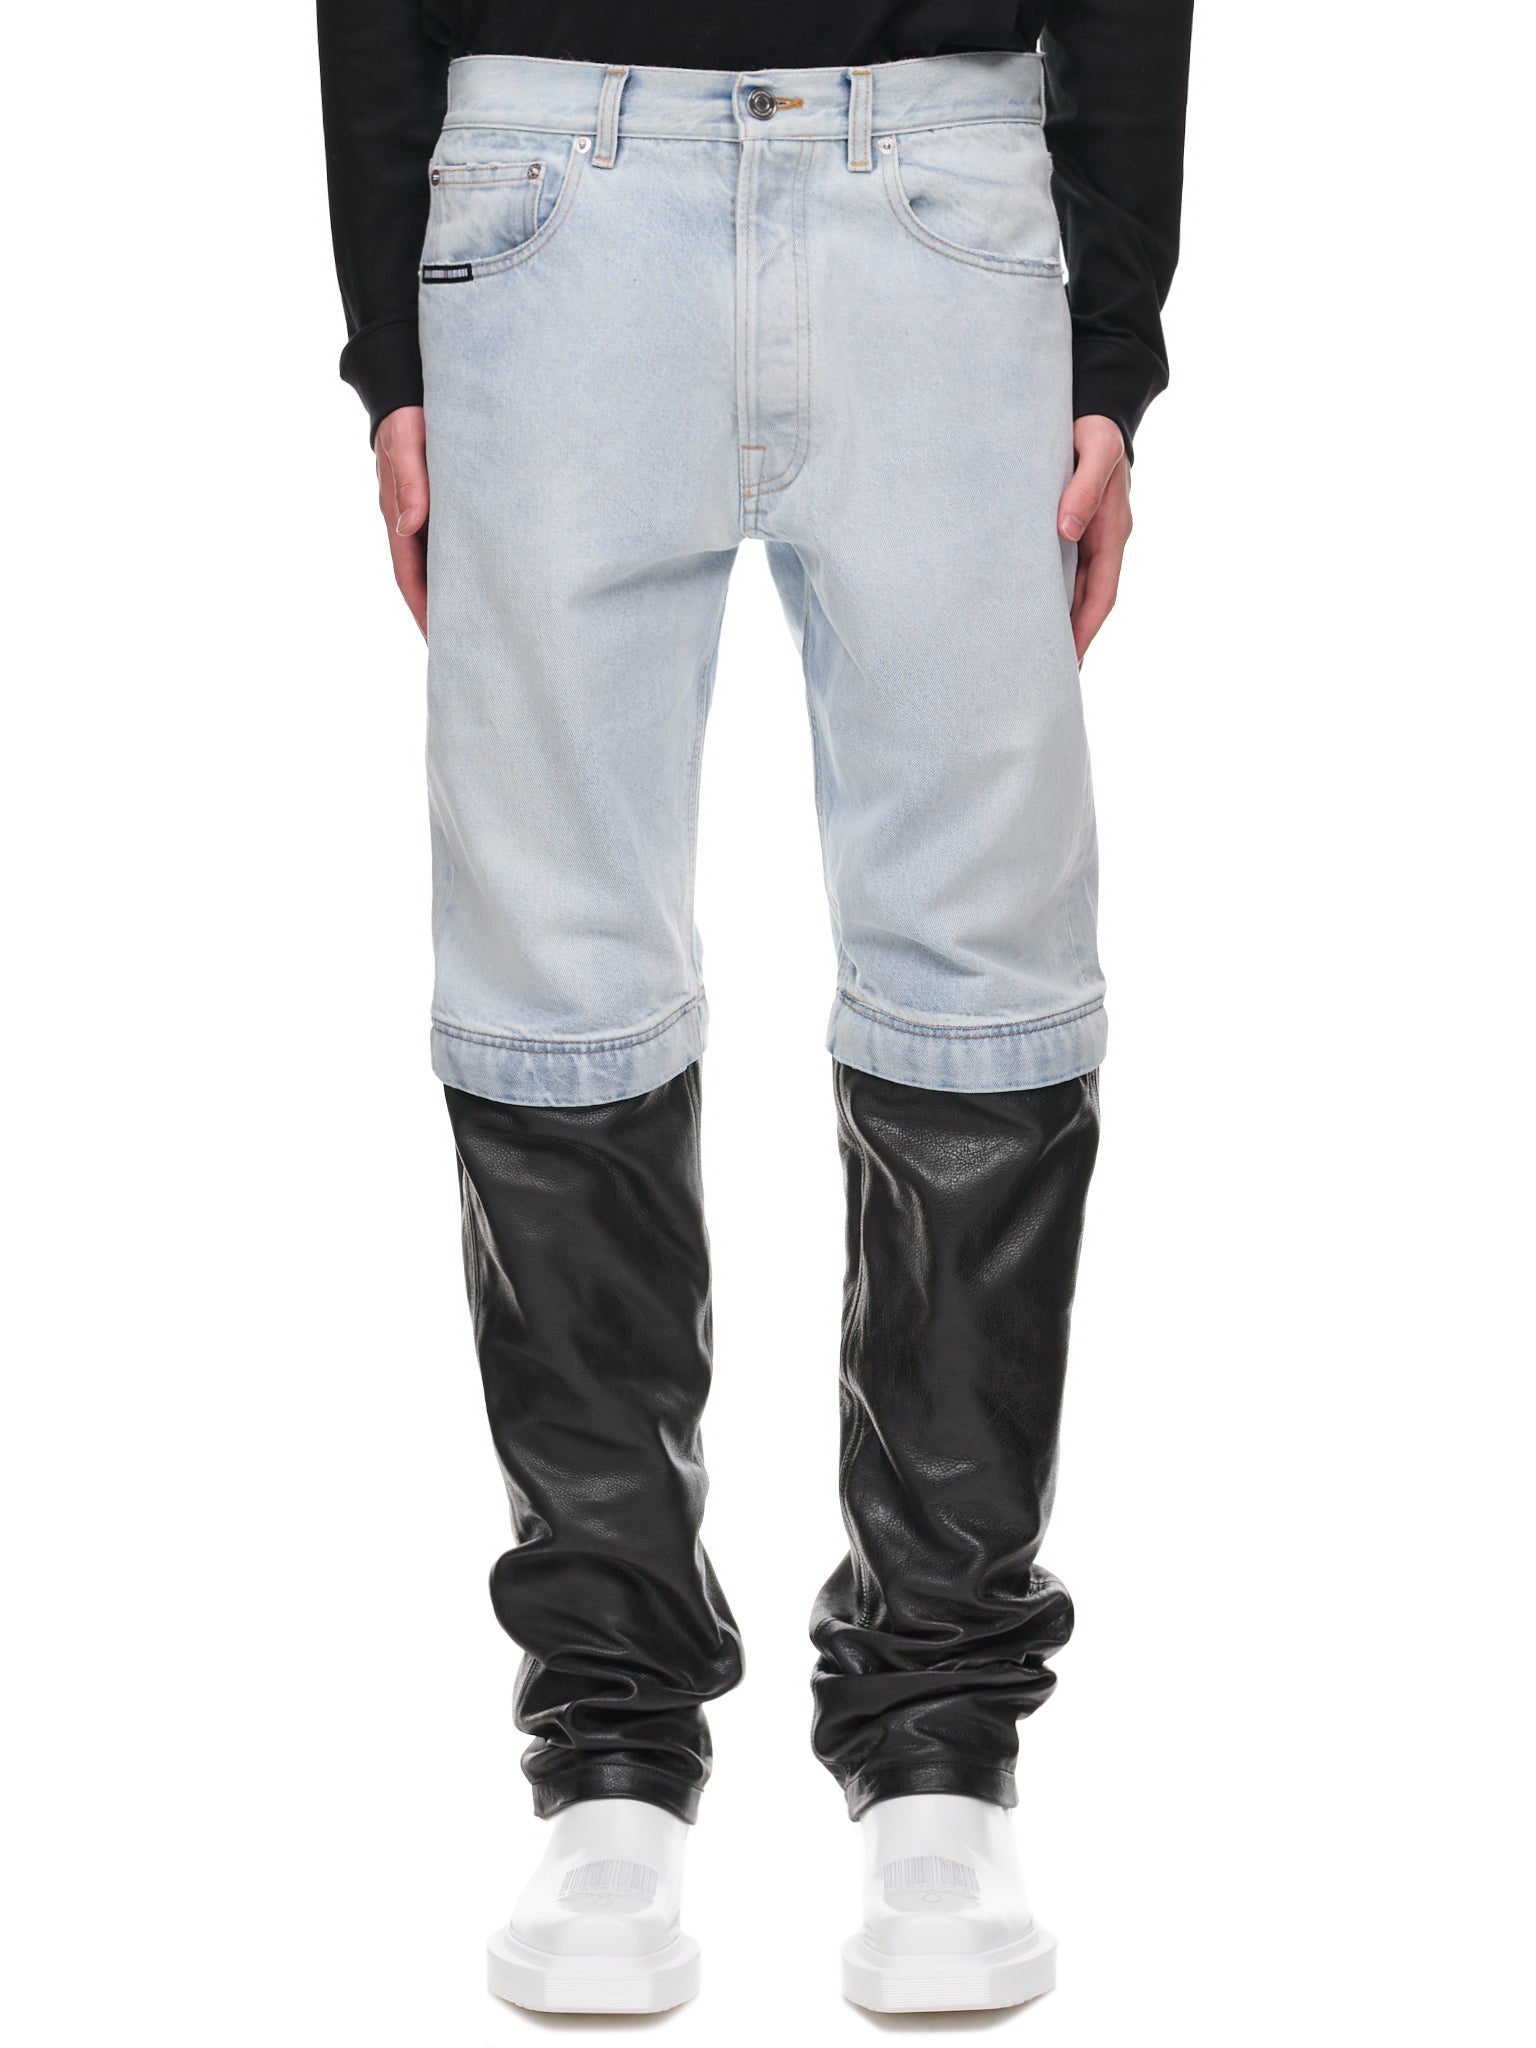 Leather Denim Convertible Pants (VL14PA380B-BLACK)